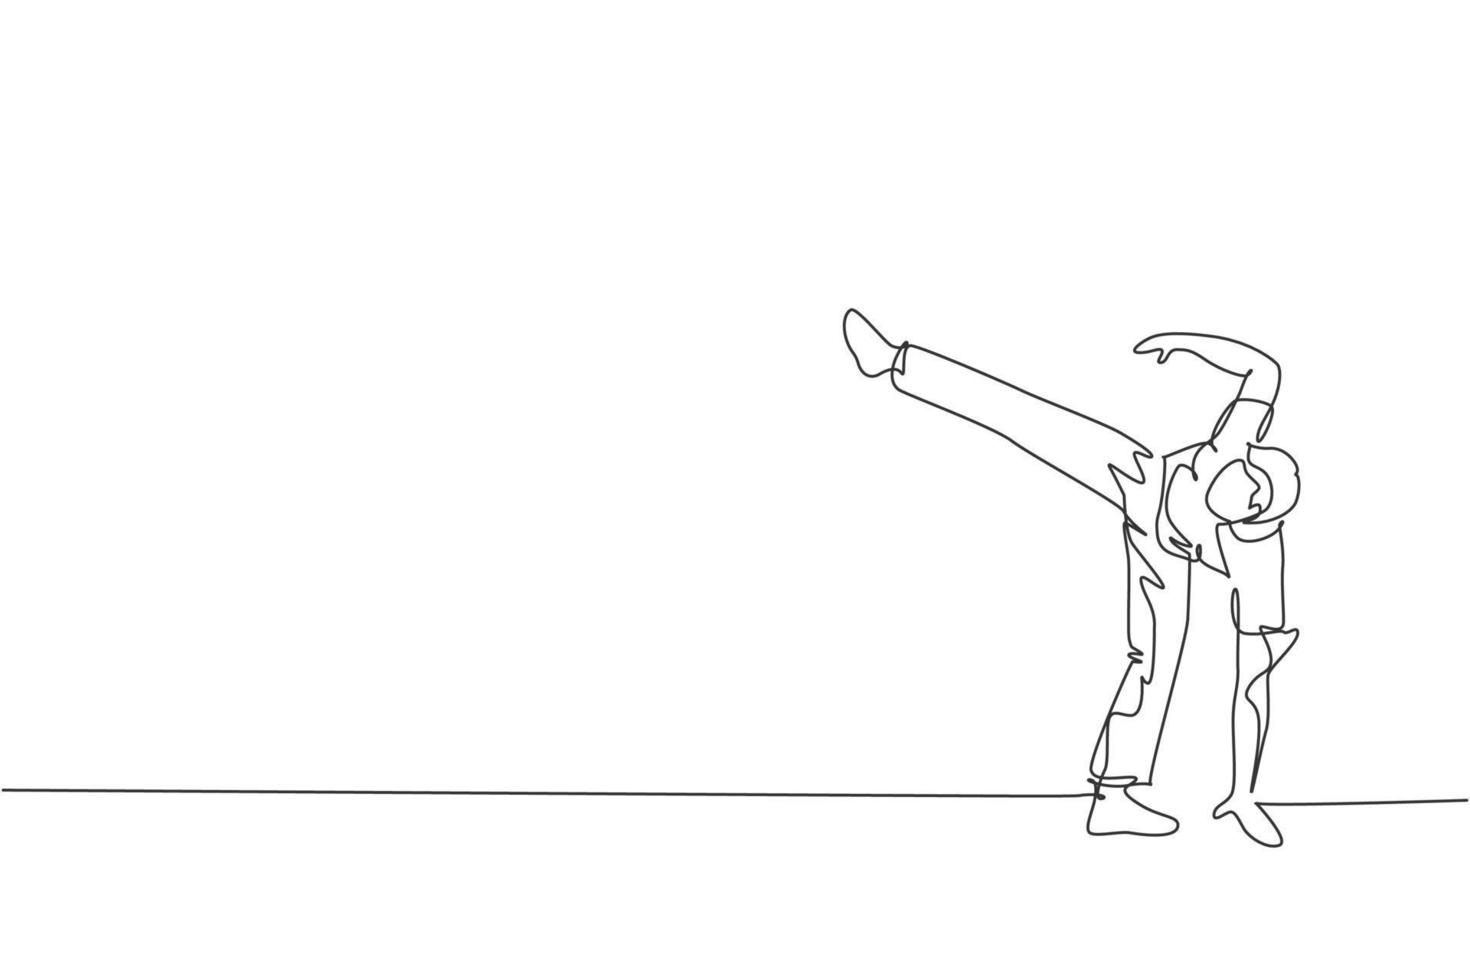 en kontinuerlig linjeteckning capoeira ung sportig brasiliansk fighter man tränar capoeira på stranden. hälsosam traditionell kampsport koncept. dynamisk enda rad rita design vektorillustration vektor